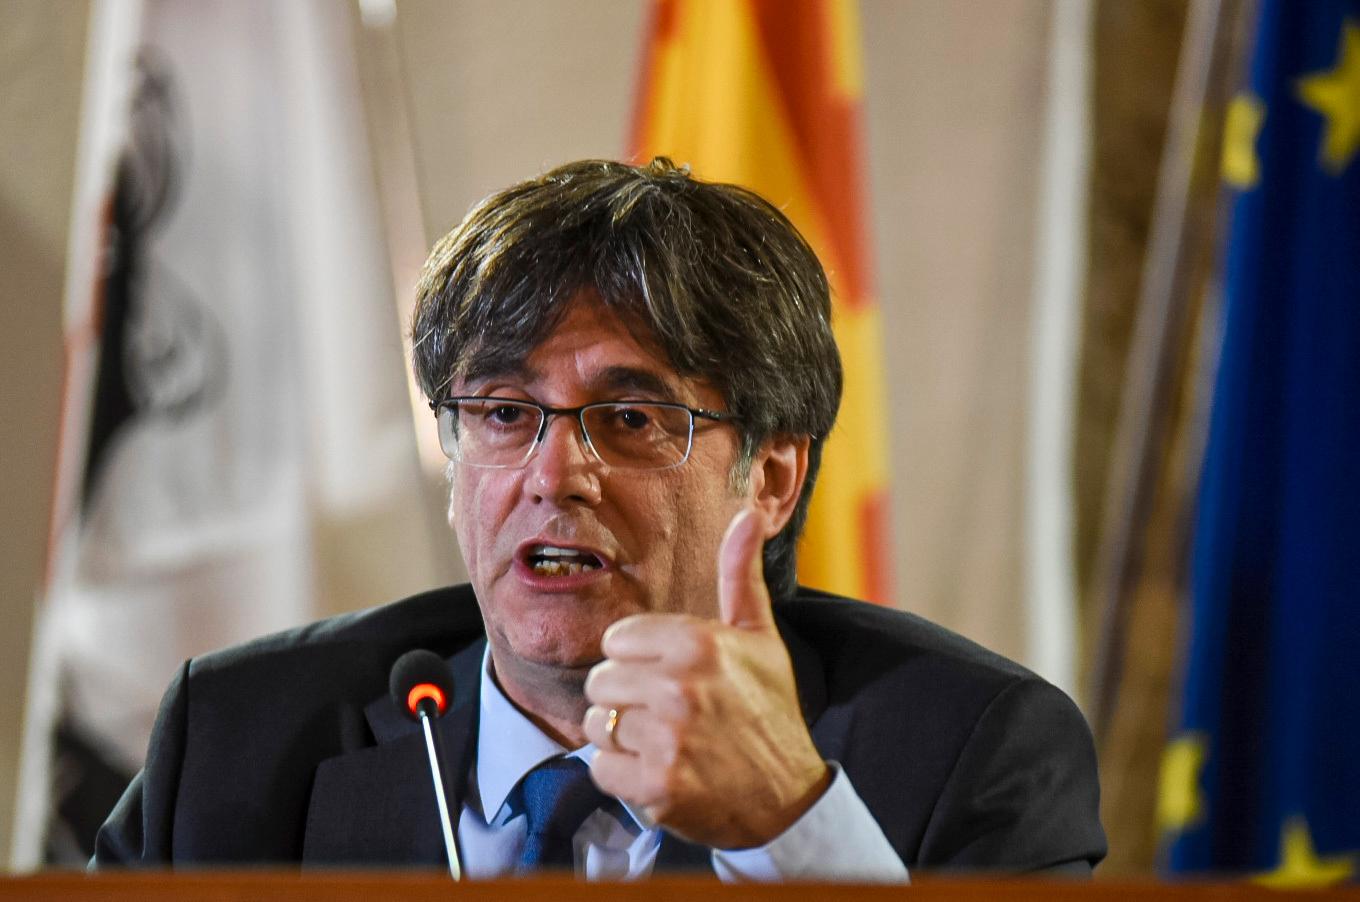 Carles Puigdemont under en presskonferens i höstas.